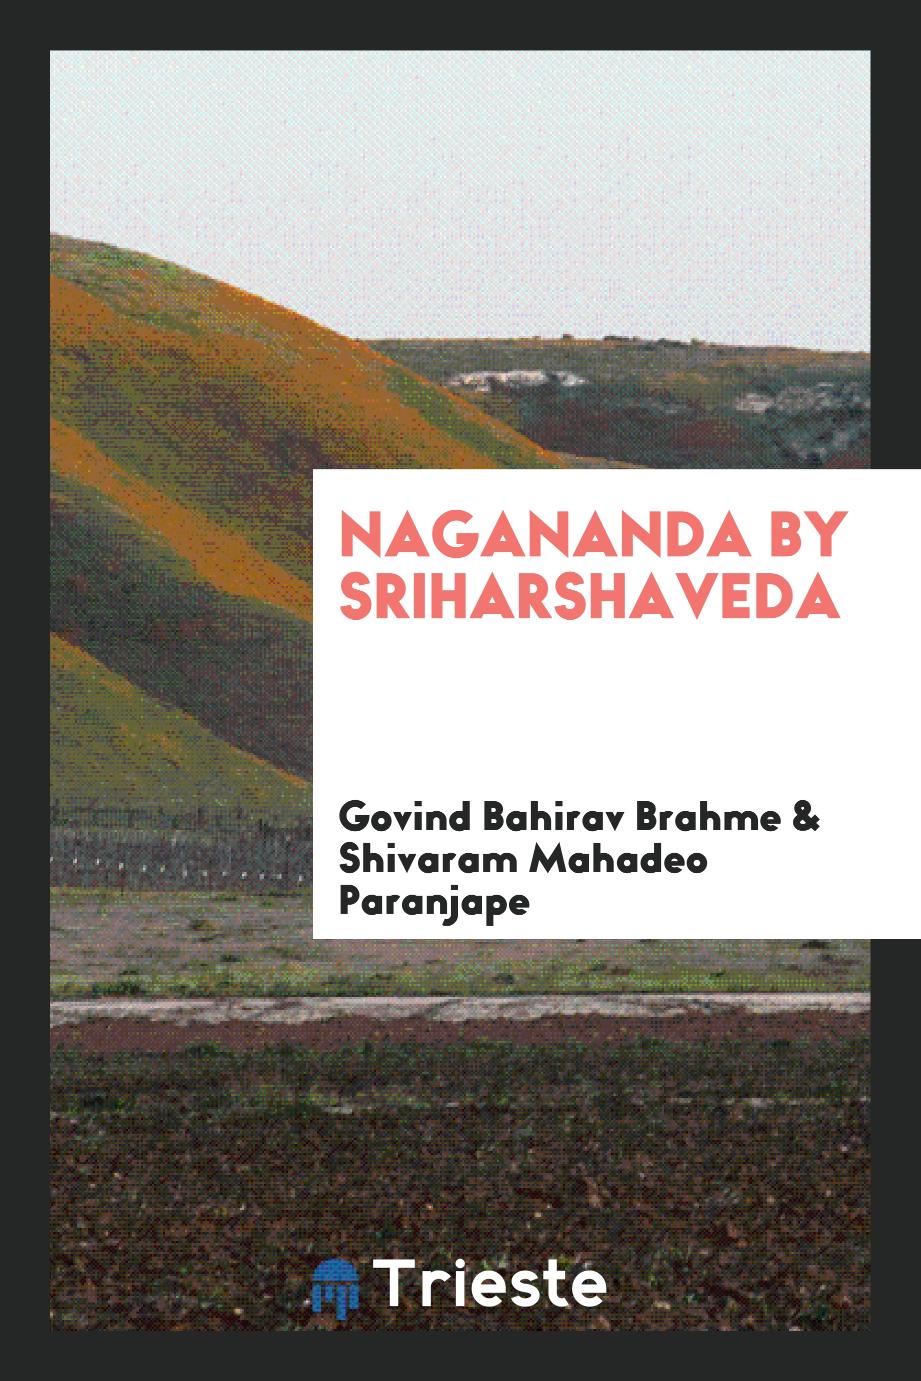 Nagananda by Sriharshaveda